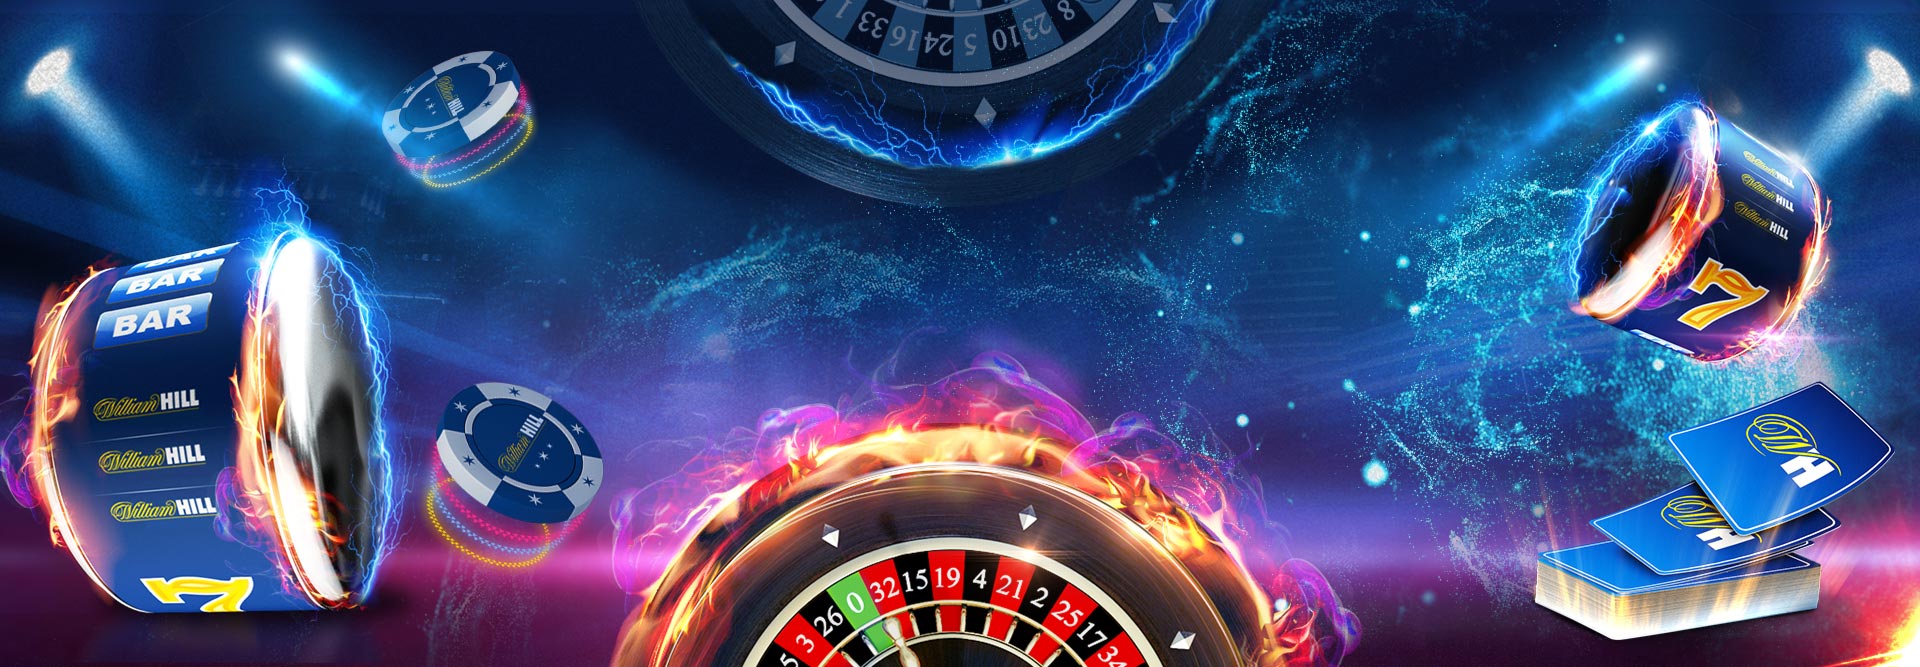 Существуют ли программы для взлома игровых последовательностей в онлайн казино